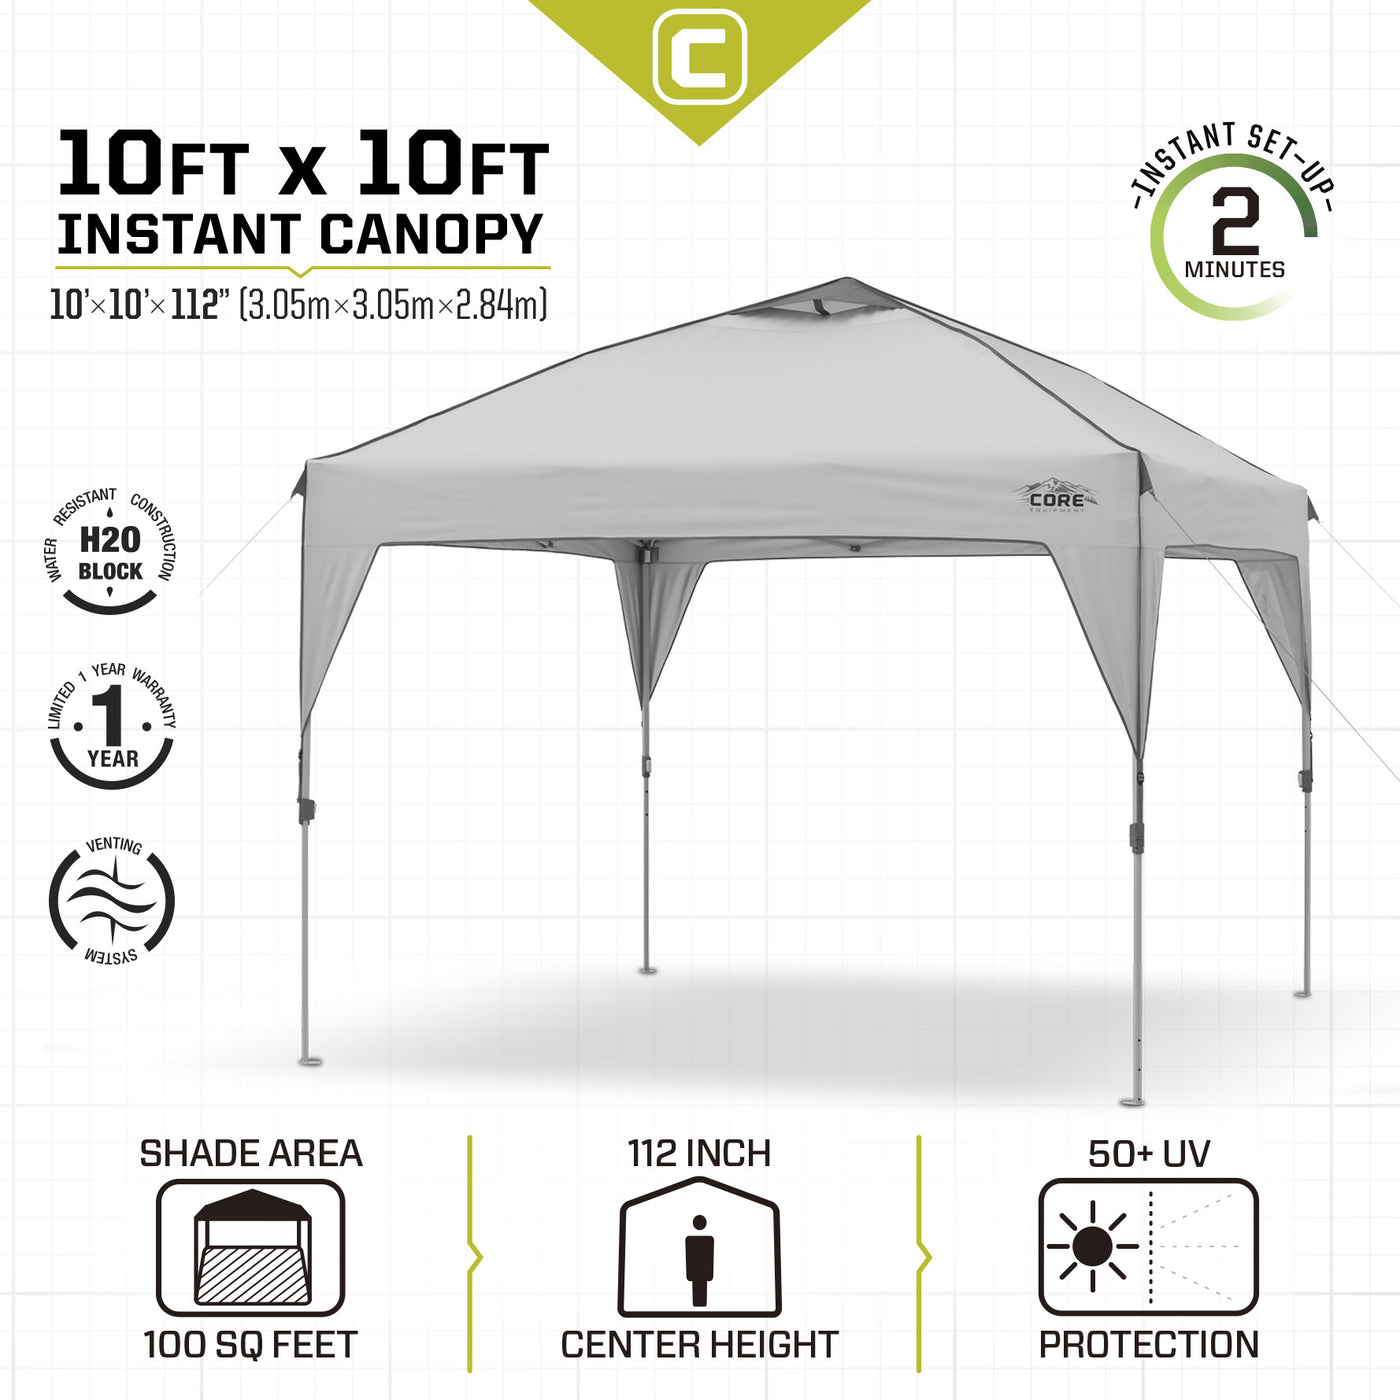 CORE 10x10 Instant Canopy Tech Specs